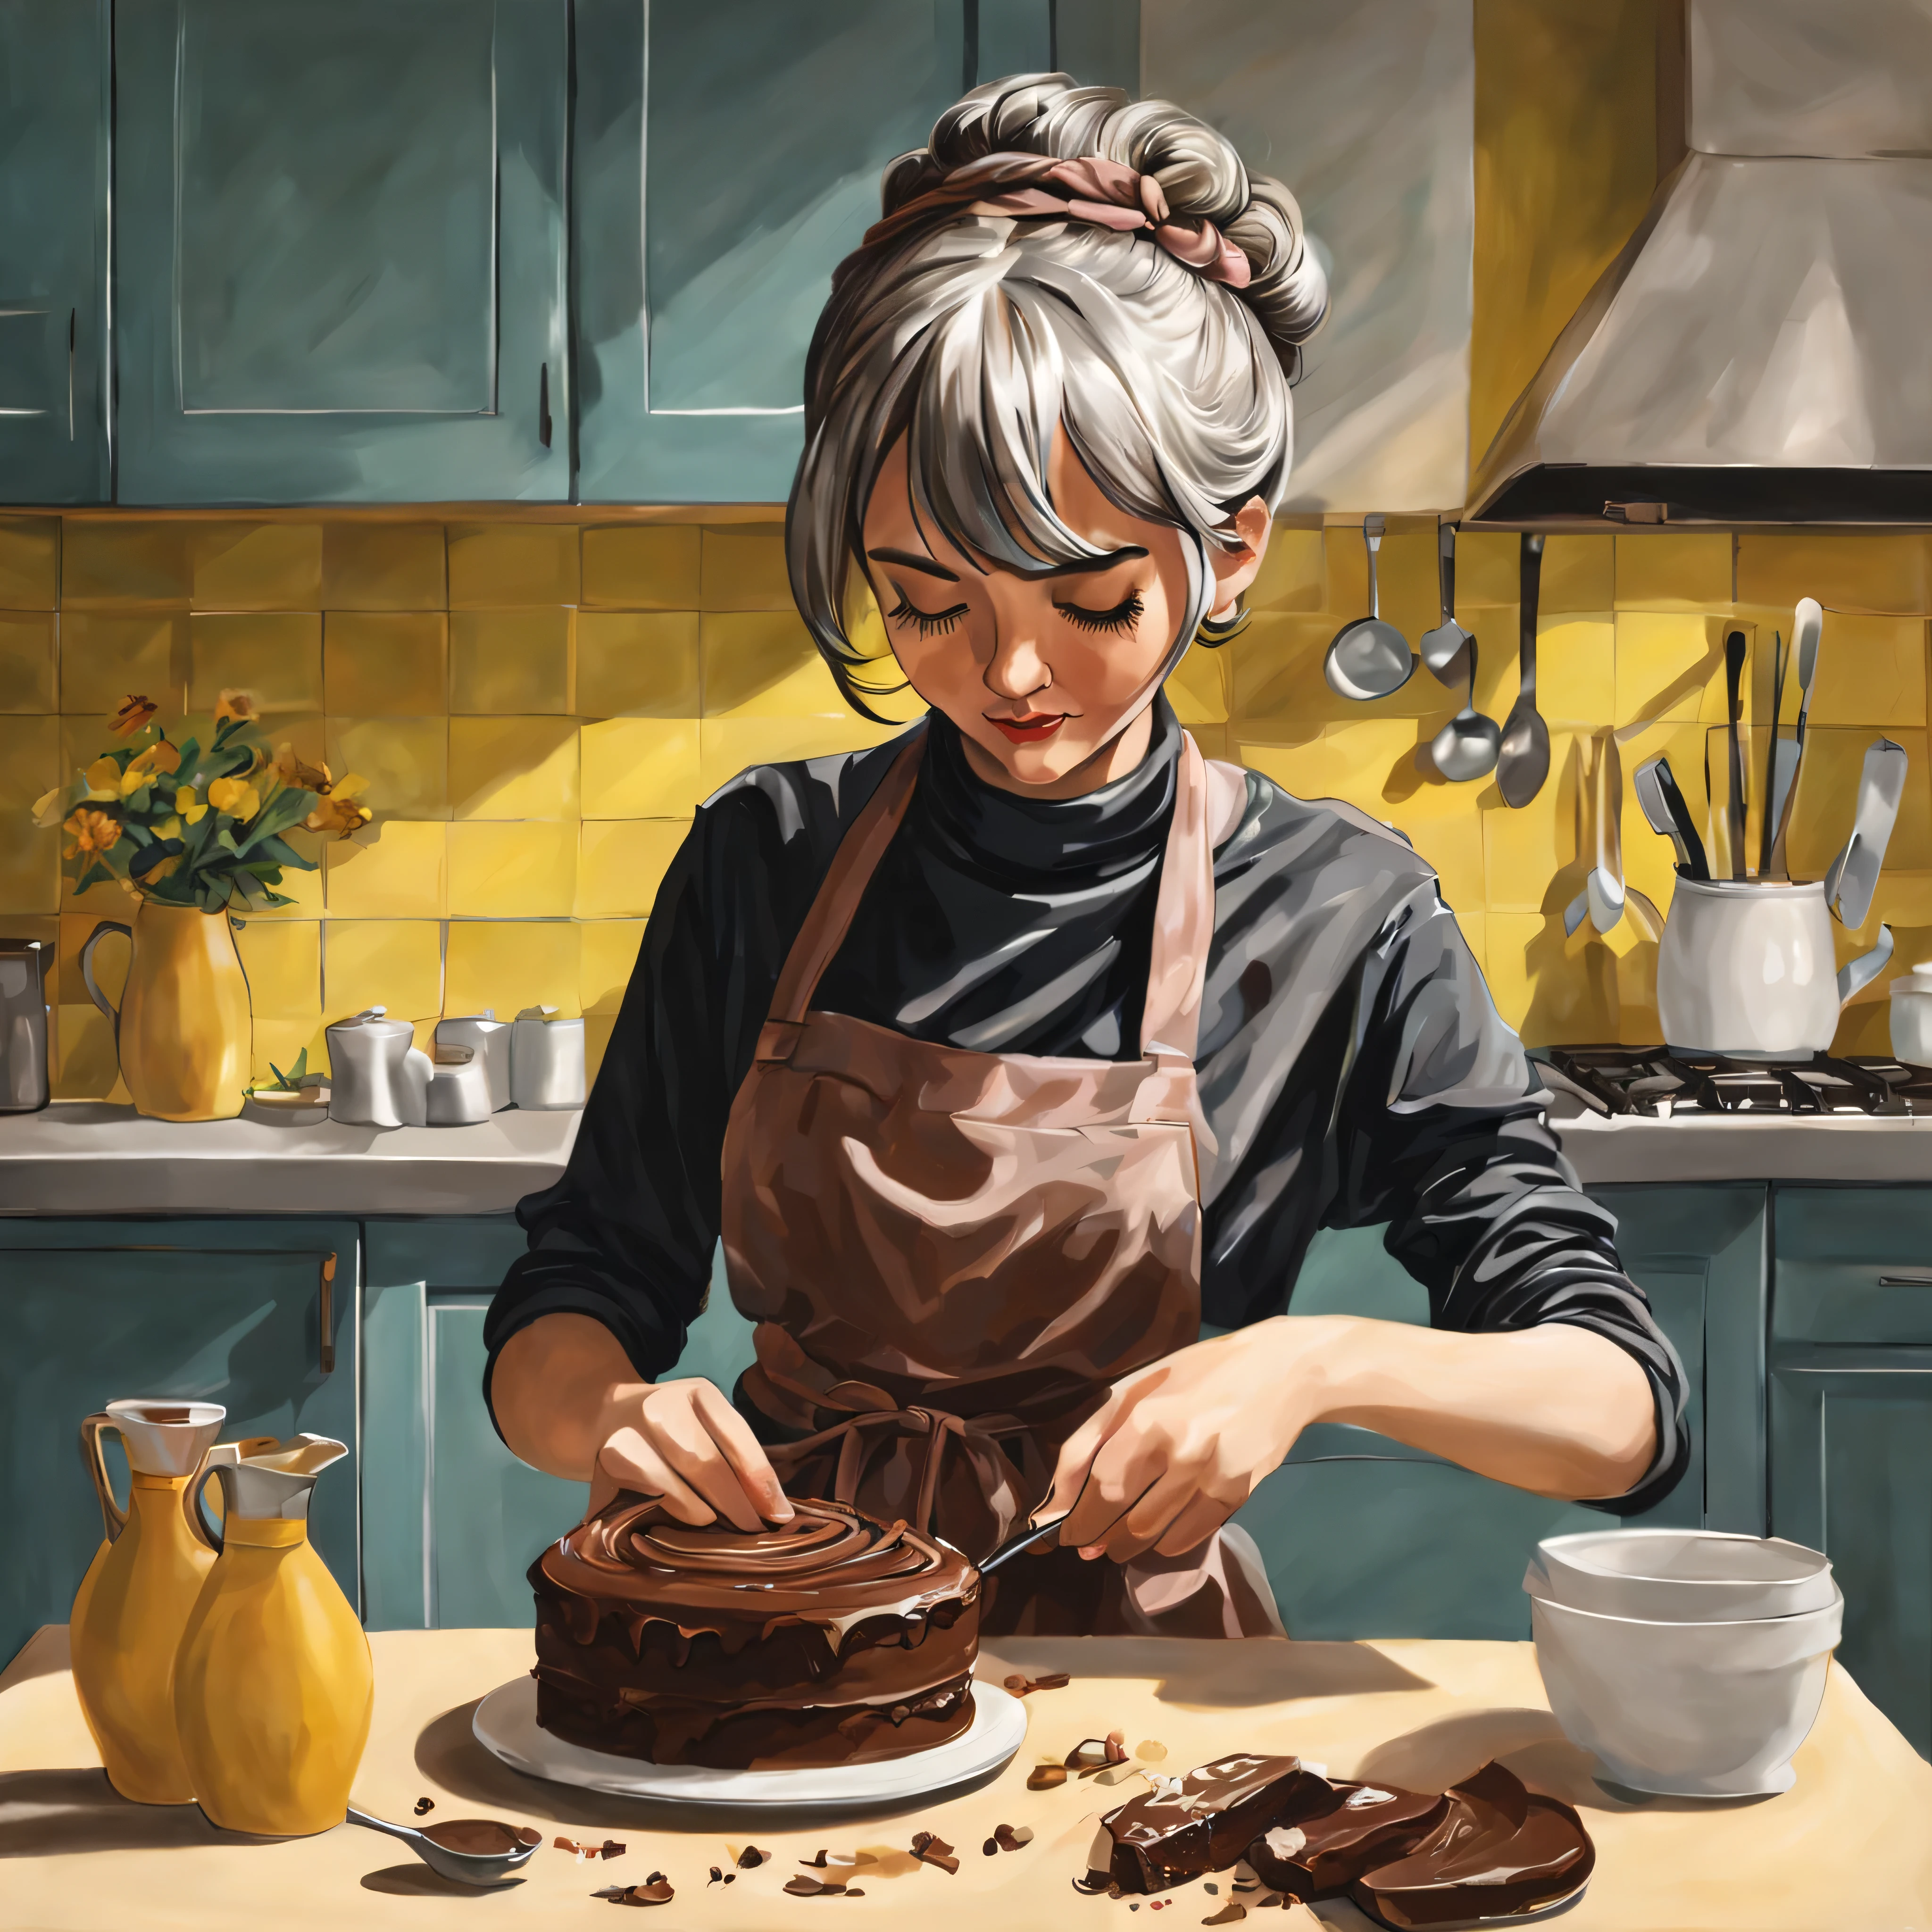 Mädchen macht hausgemachten Schokoladenkuchen in der Küche, graue Haare, Dutt-Haar, Kurzes Haar, welliges Haar, Haarschal, Pop-Art, Hyperrealismus, von der Seite, blühen, Meisterwerk, anatomisch korrekt, Super detailliert, gute Qualität, Erweiterte Details